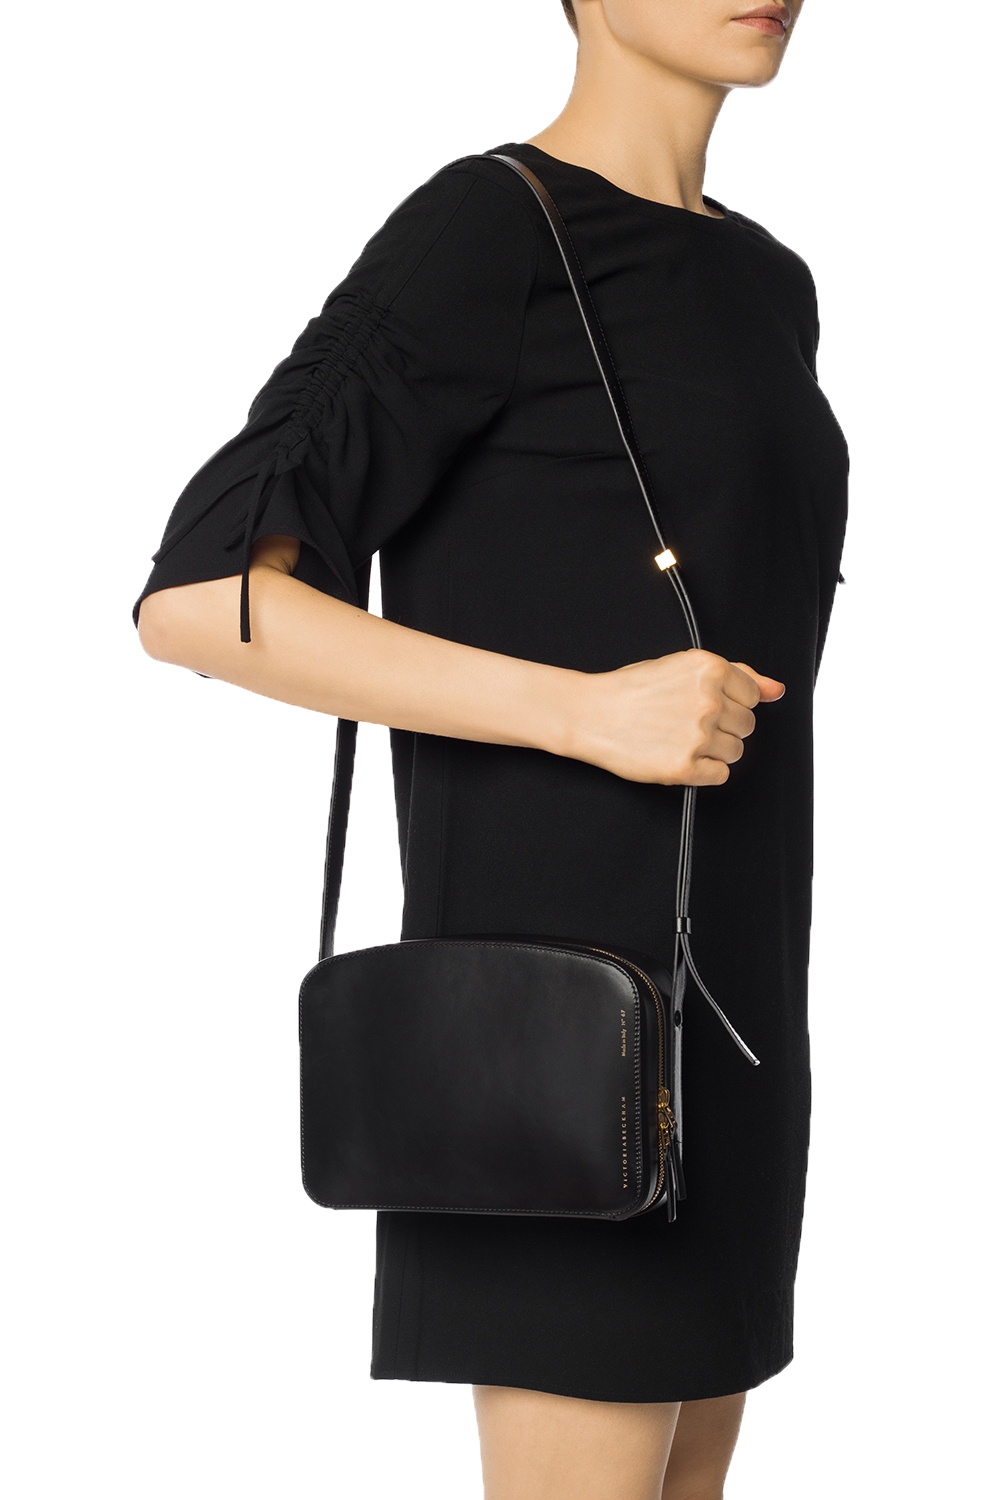 Victoria Beckham 'Eva Clutch Crossbody Bag